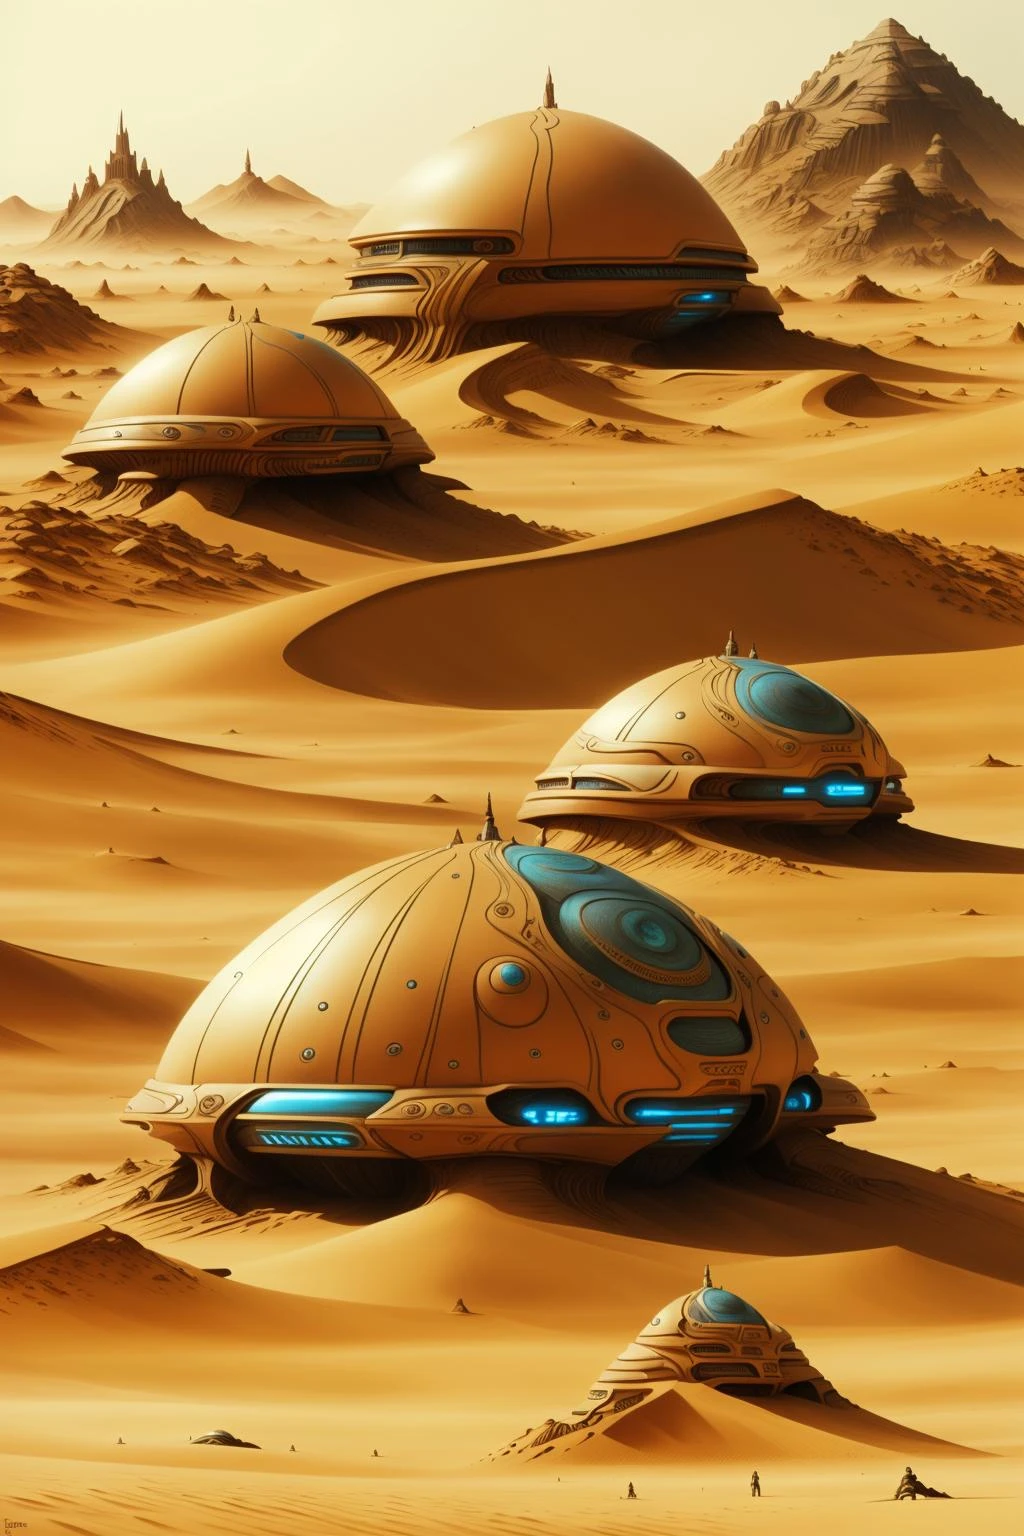 沙丘电影中的角色, a futuristic city in the 沙漠 with a giant dome , 户外, 多个男孩, 风景, 山, 沙, 宇宙飞船, 沙漠 , 科幻, 田野中间的几块石头